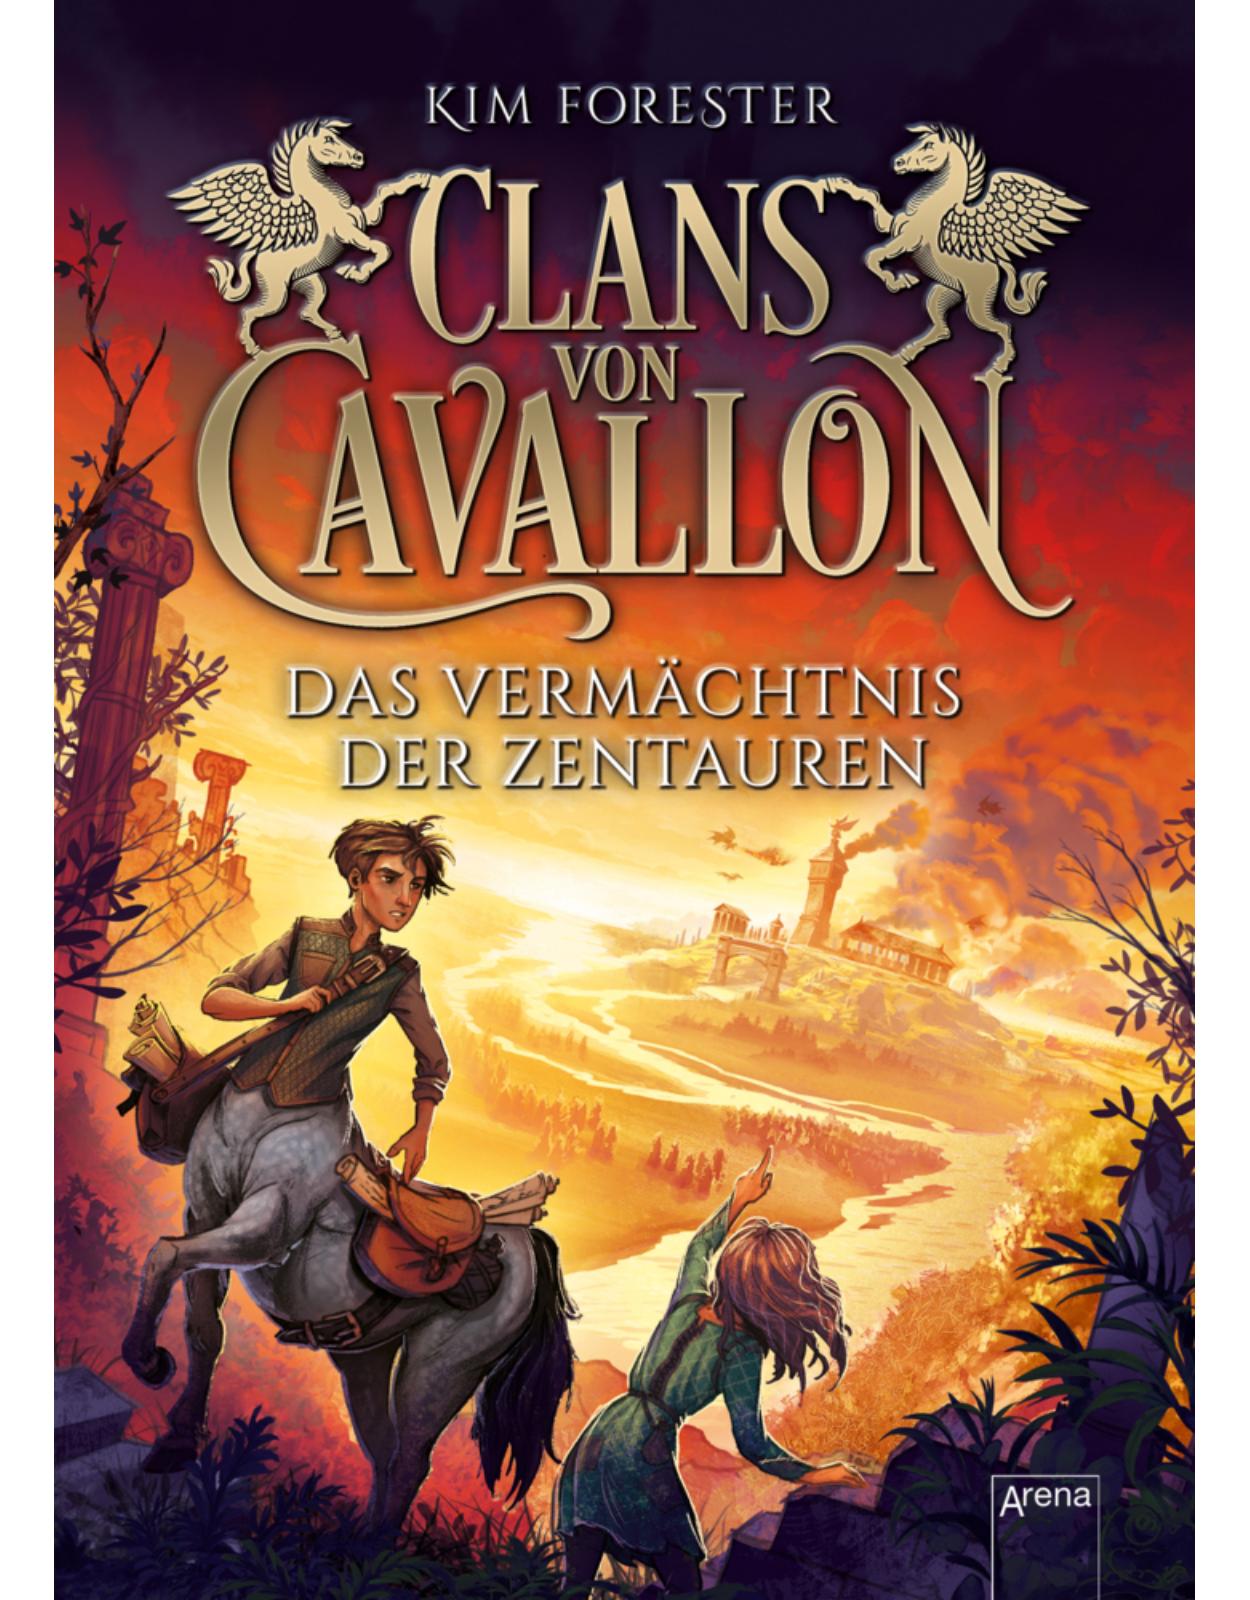 Clans von Cavallon. Das Vermachtnis der Zentauren